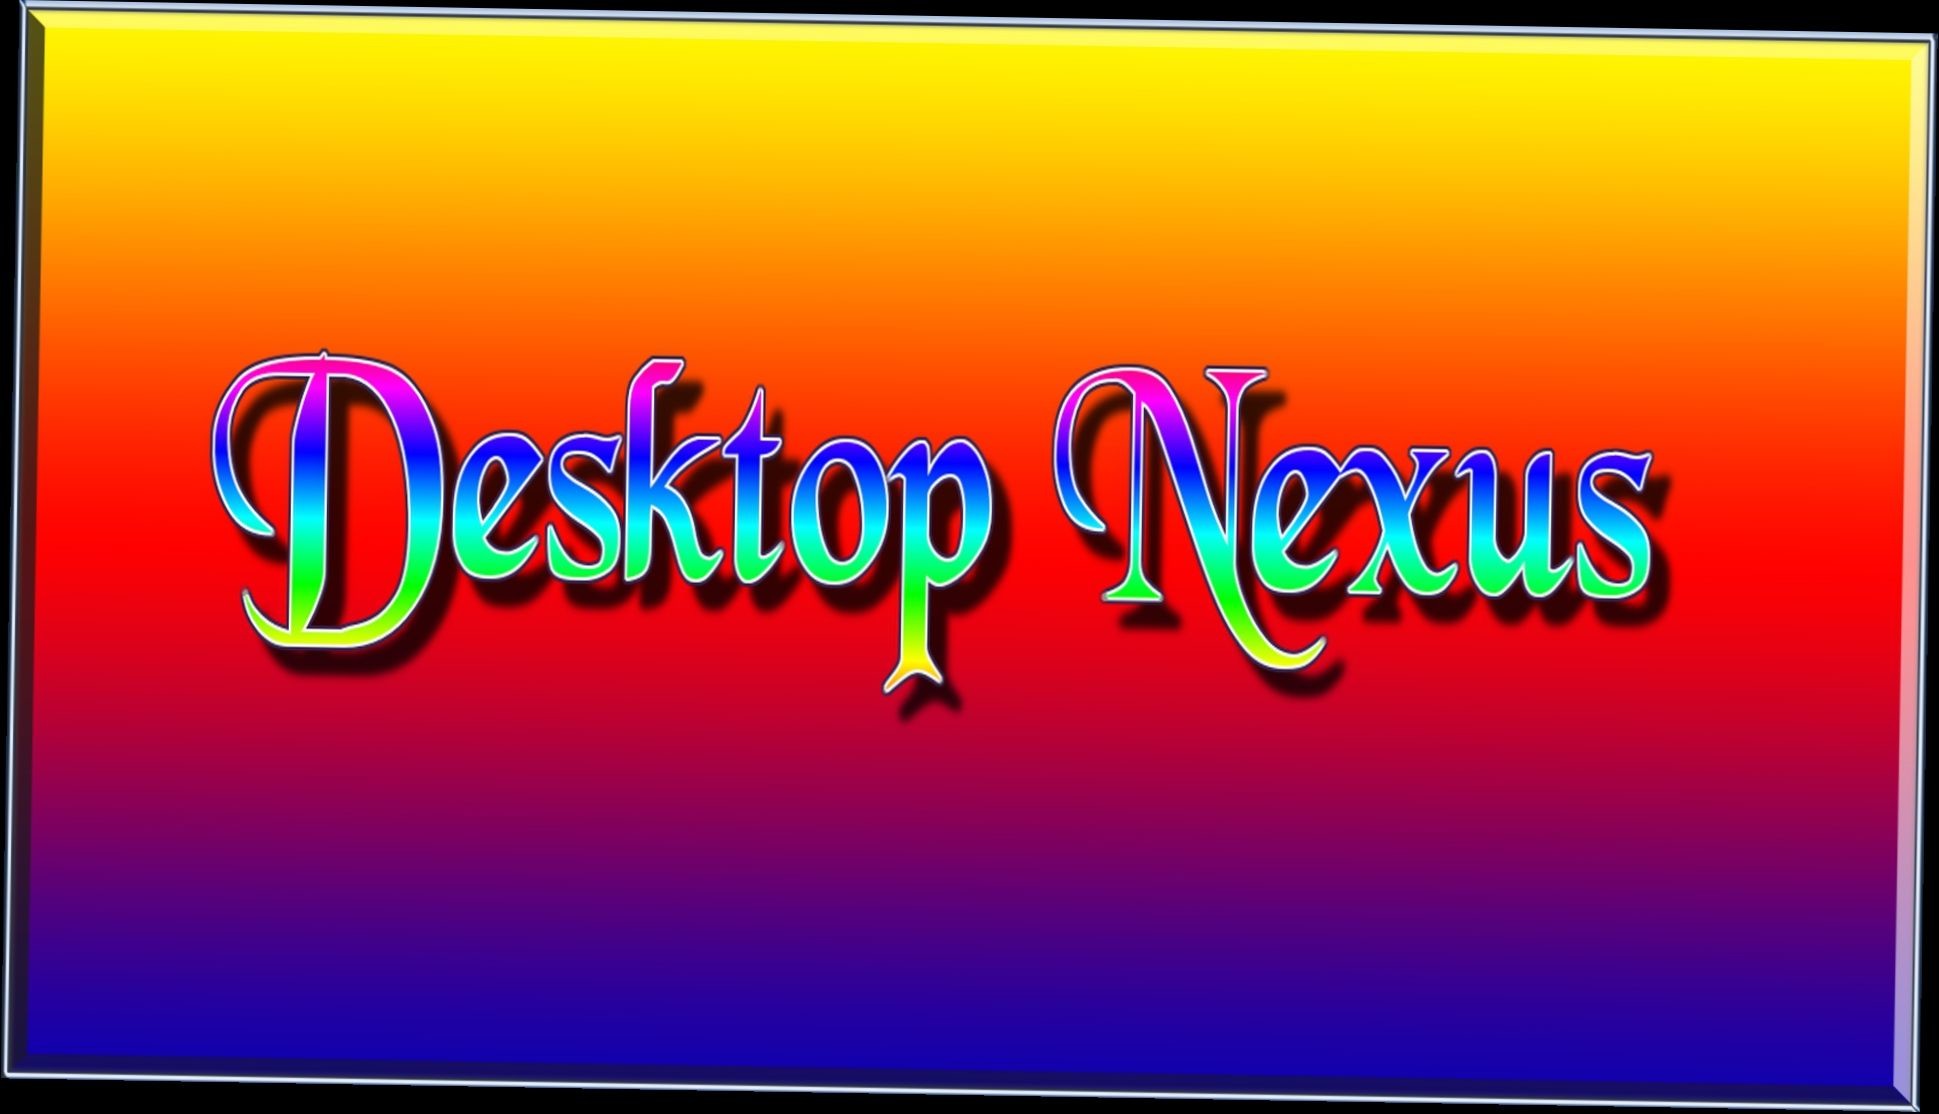 1939x1114 nexus desktop wallpapers - 3 items